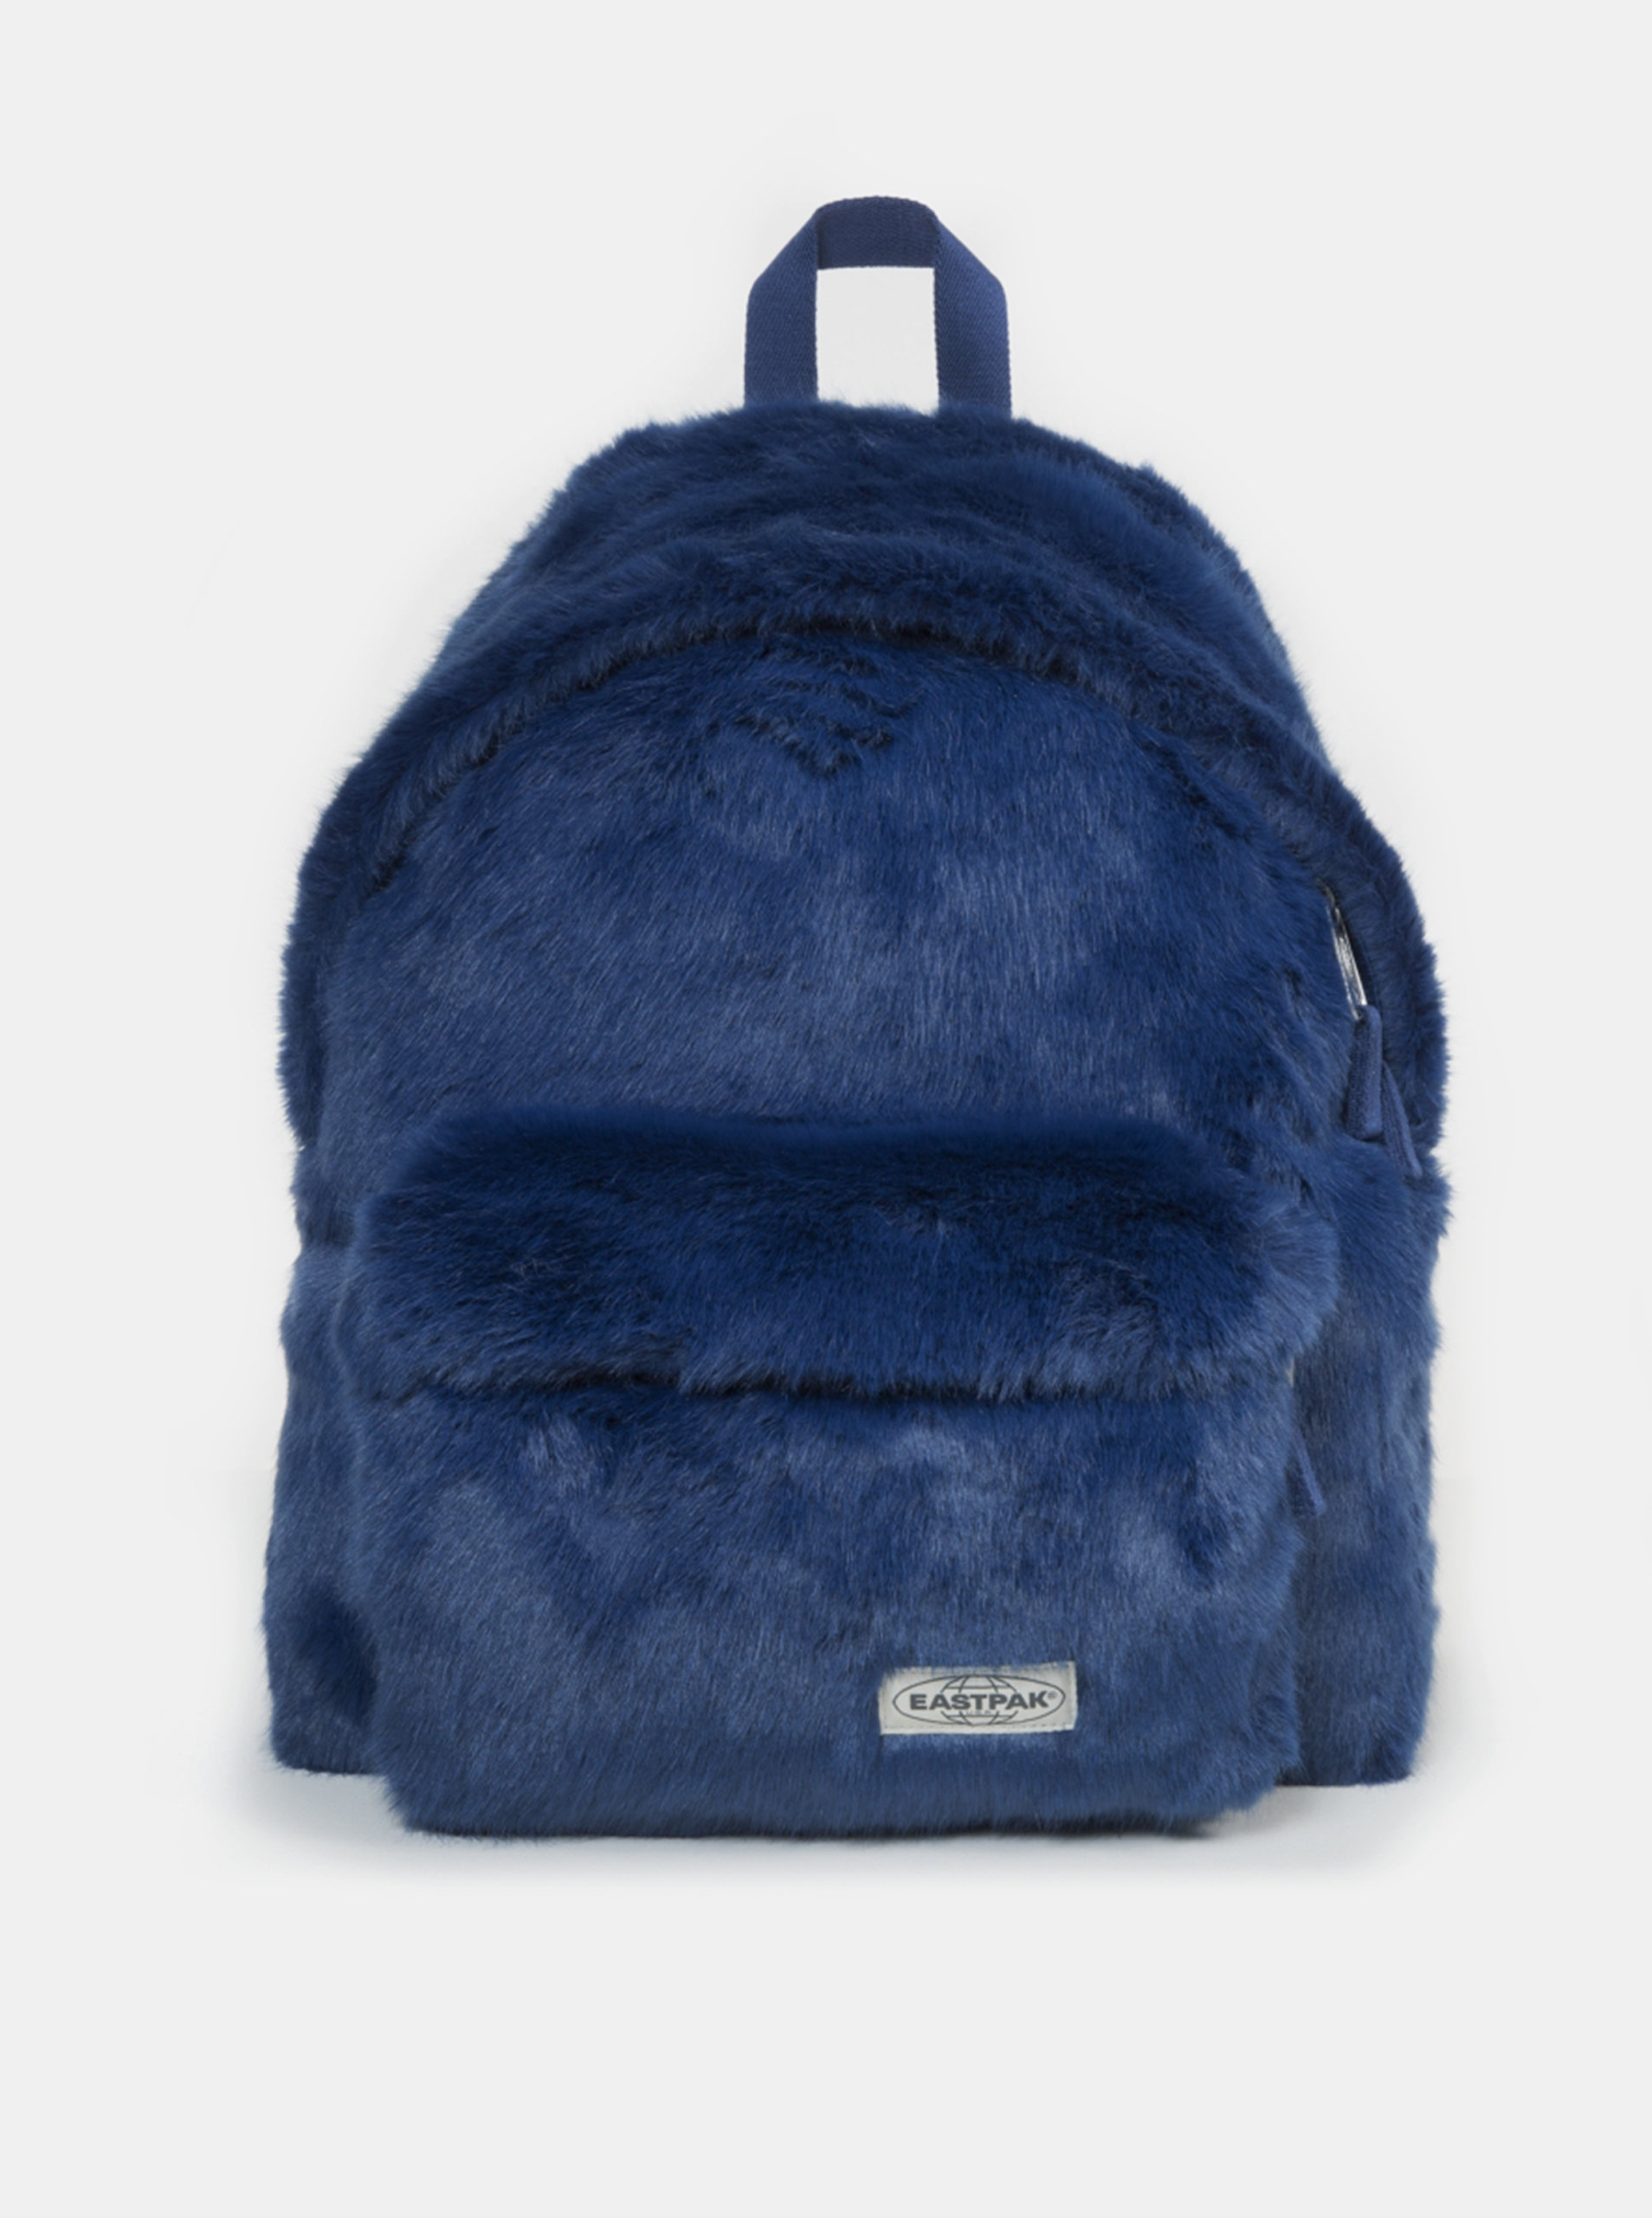 Tmavě modrý batoh z umělého kožíšku Eastpak 24 l